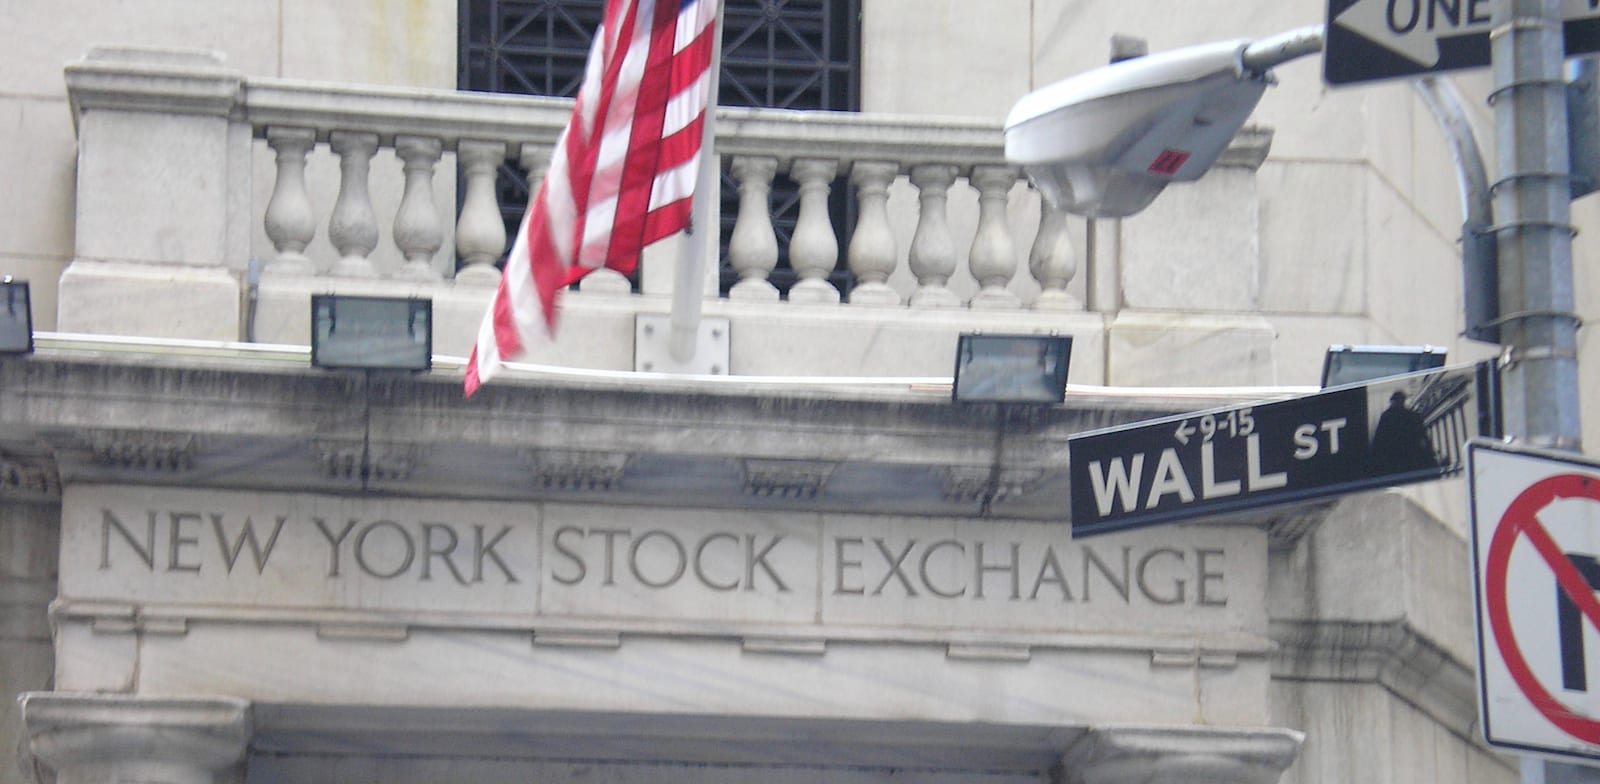 שלט רחוב וול סטריט והכניסה לבורסת NYSE בניו יורק / צילום: עוזי בלומר